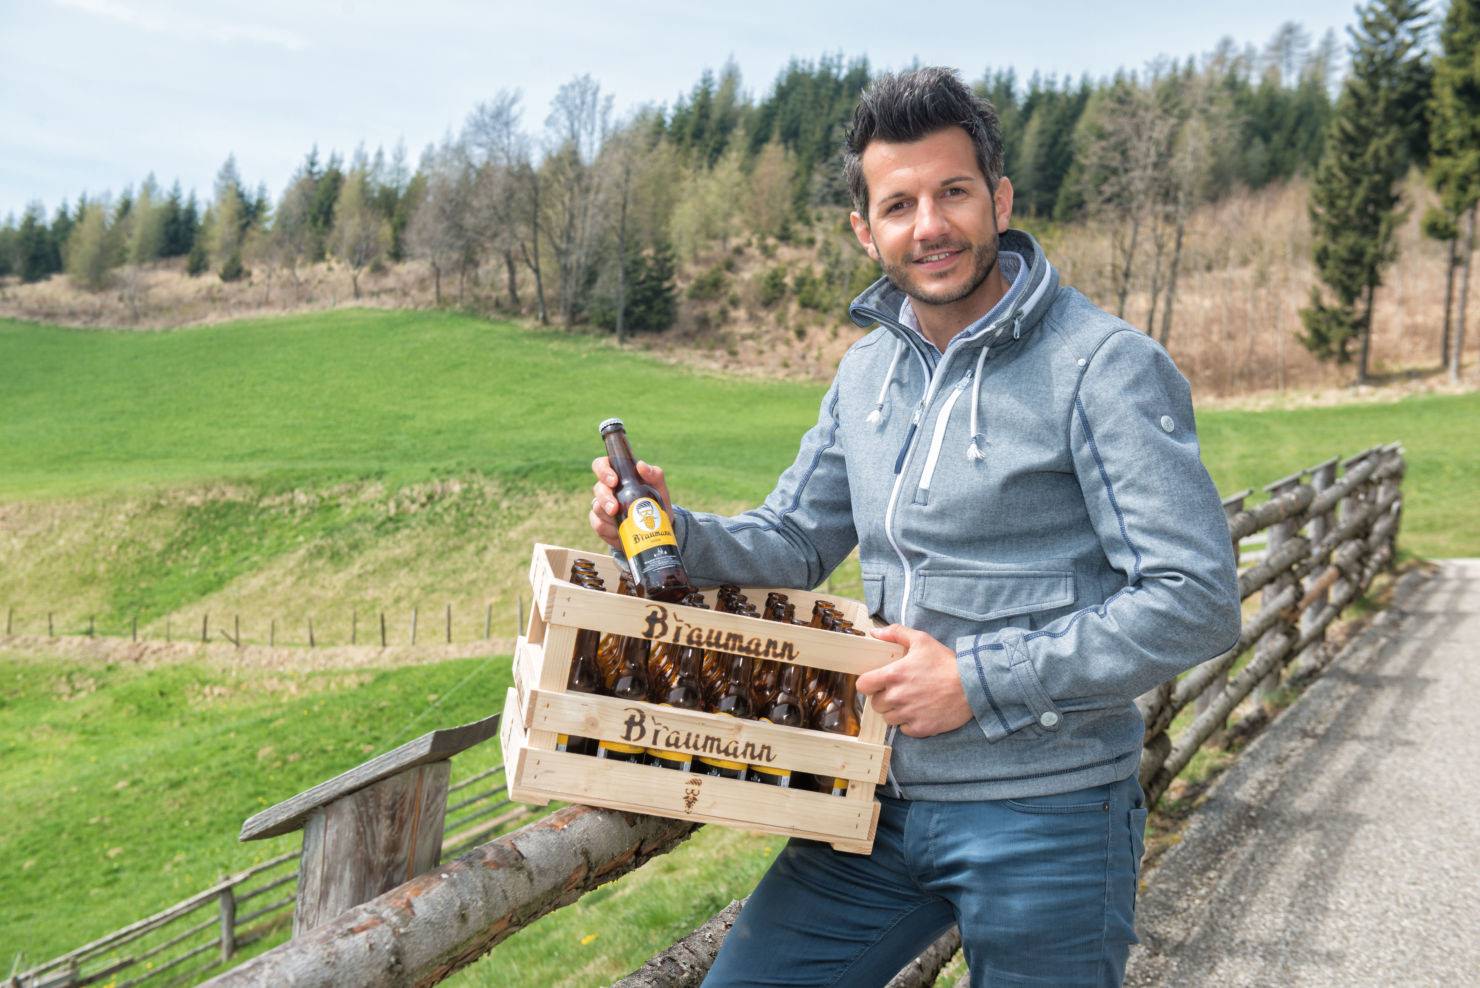 Manfred Baumann war fasziniert von der Bierherstellung und ist damit nun selbstständig